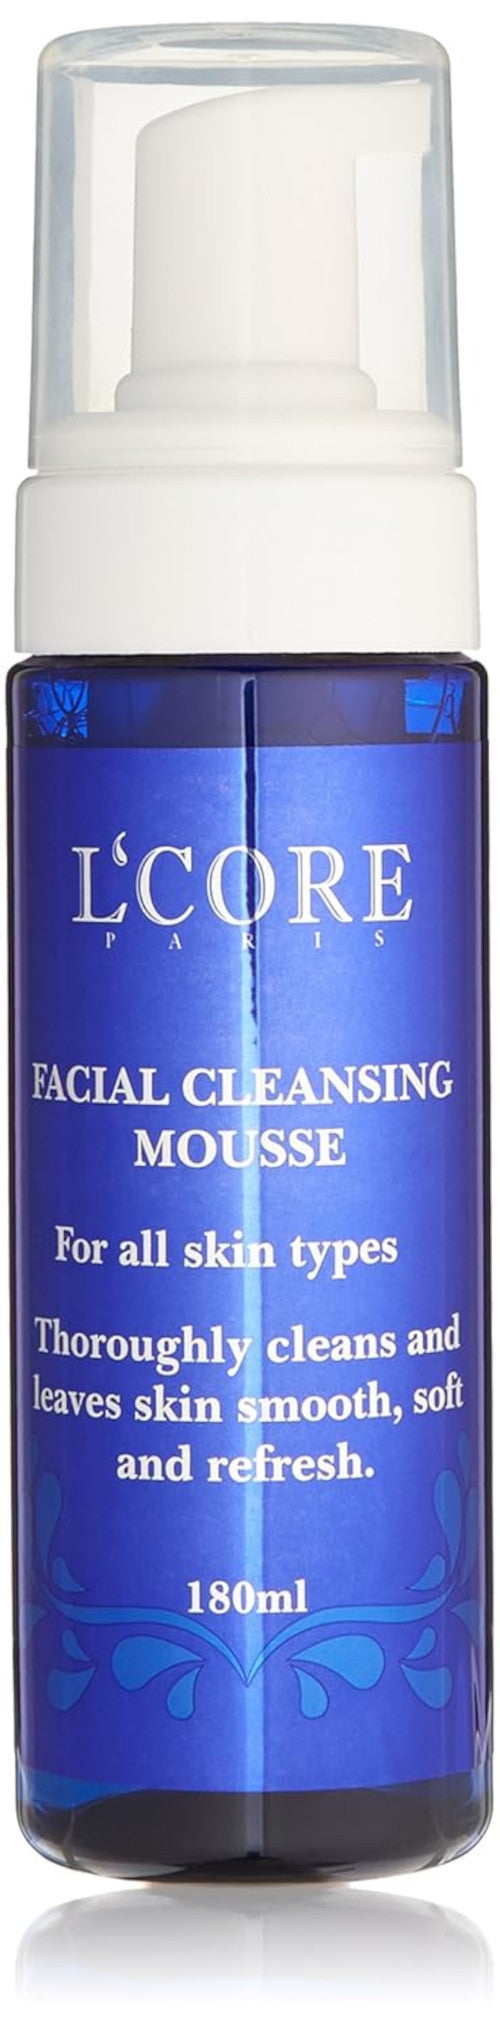 L'core paris Mousse de limpieza facial para todo tipo de piel, limpia a fondo y deja la piel suave, suave y fresca, 6.08 fl. onz. 